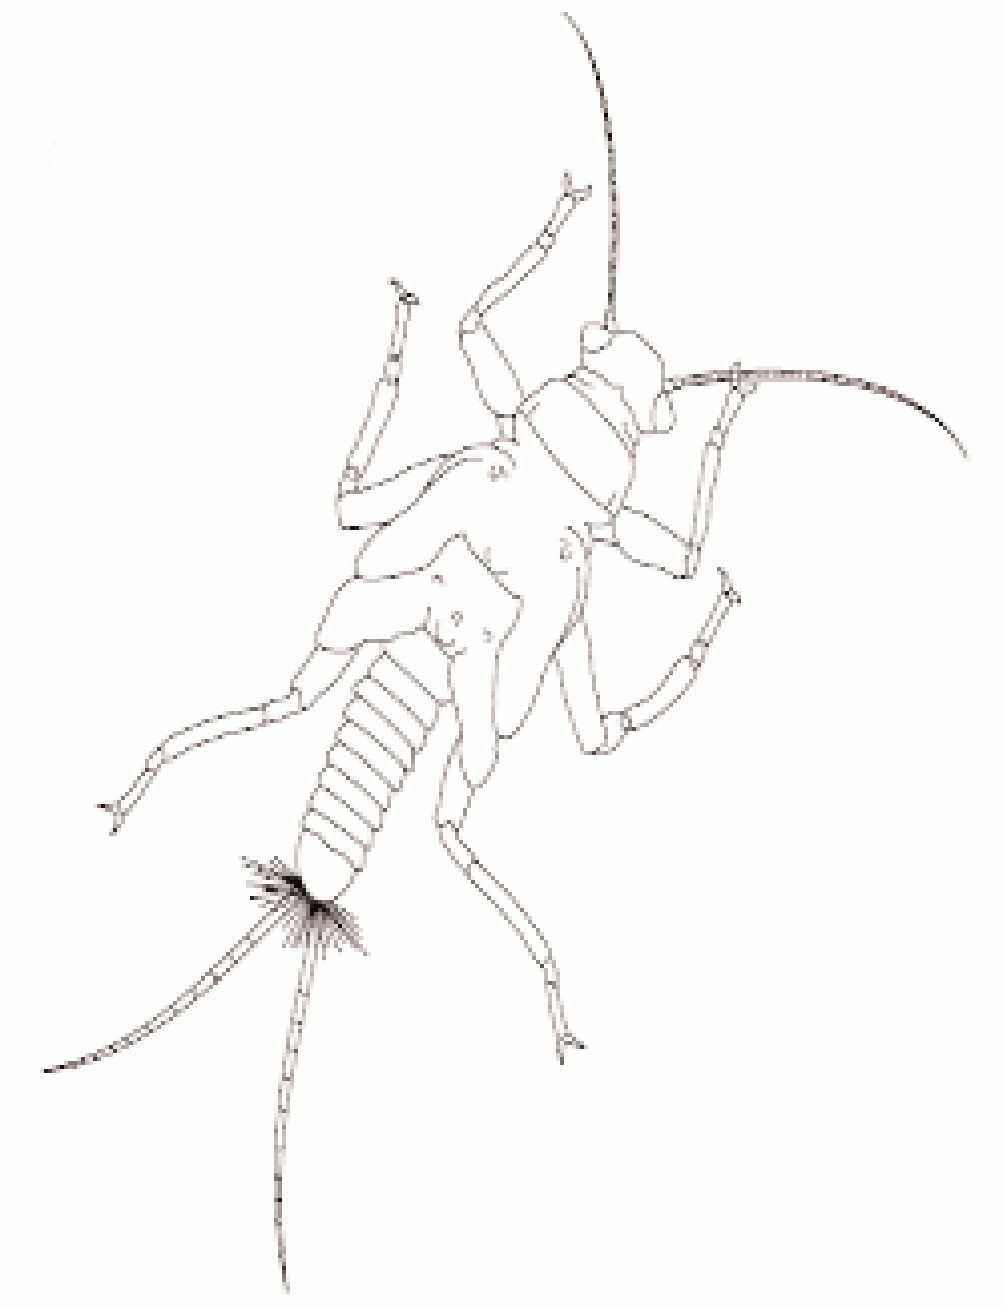 Nome: Larvas de Plecóptero Dois cercos=cerci Três pares de patas na secção média do corpo (tórax) Cada pata tem duas unhas Por vezes possuem tubos de brânquias; duas placas alares Corpos